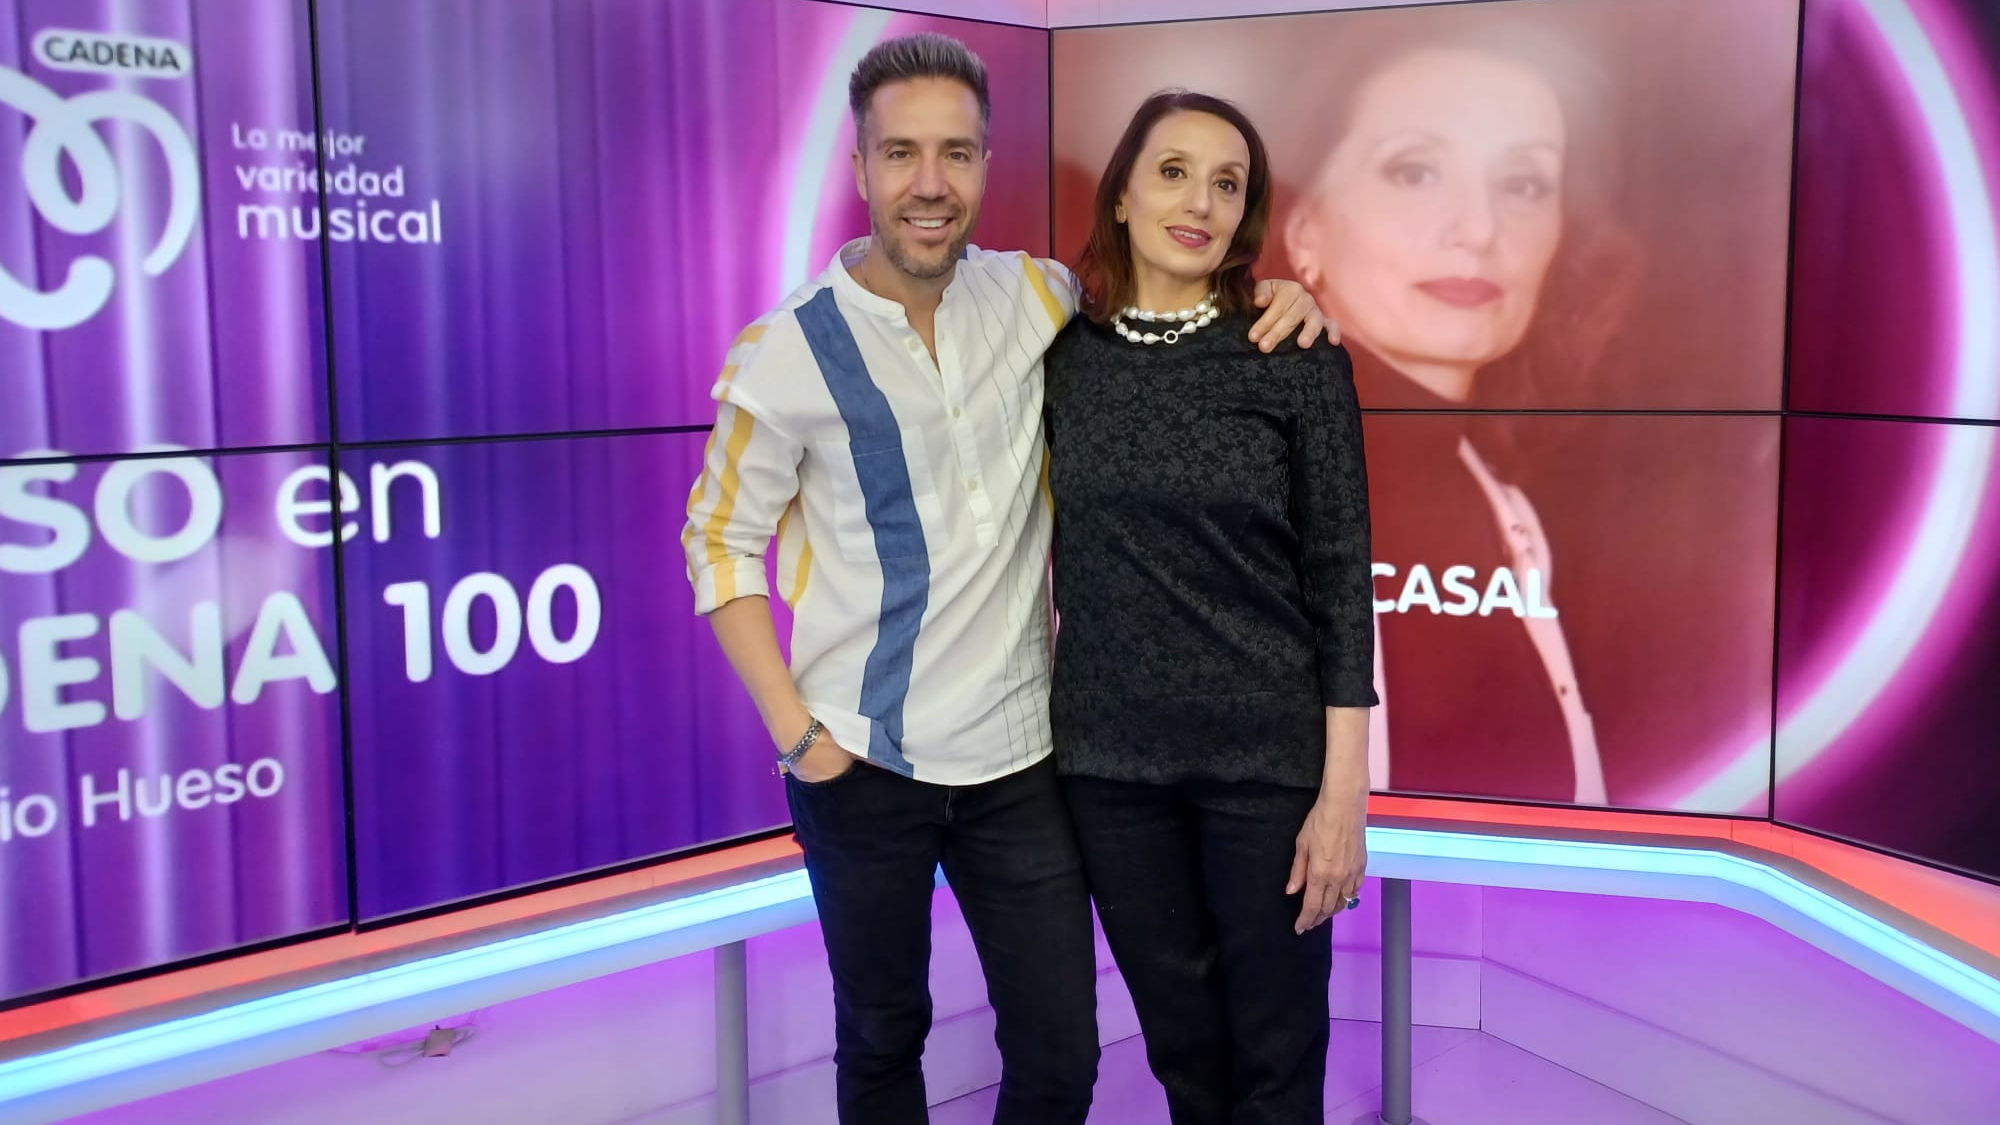 VIDEO: Luz Casal visita 'Hueso en CADENA 100' para presentar 'Solo esta noche', su primer disco grabado en directo - Cadena100 CADENA 100